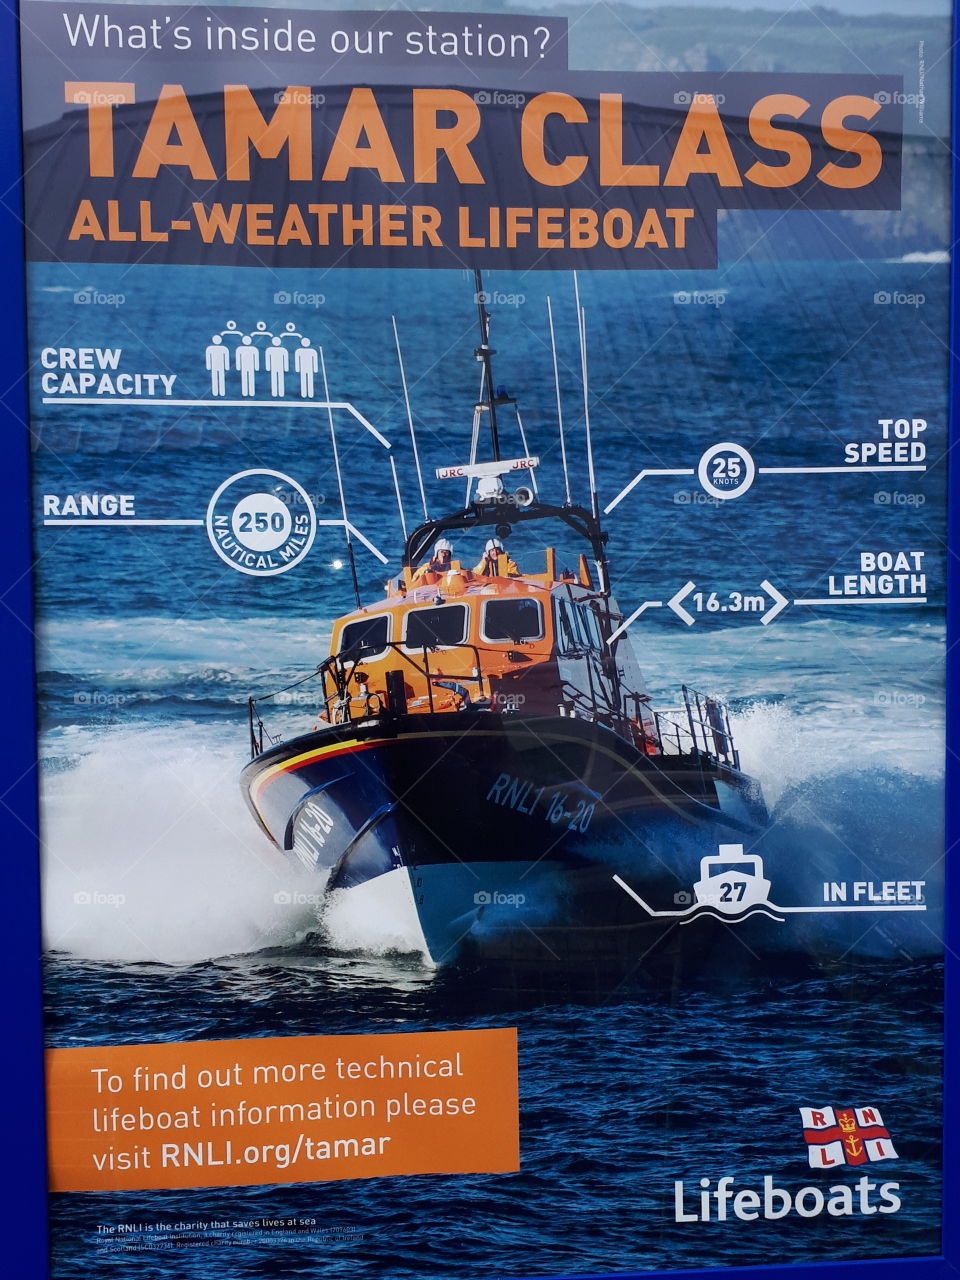 lifeboat description